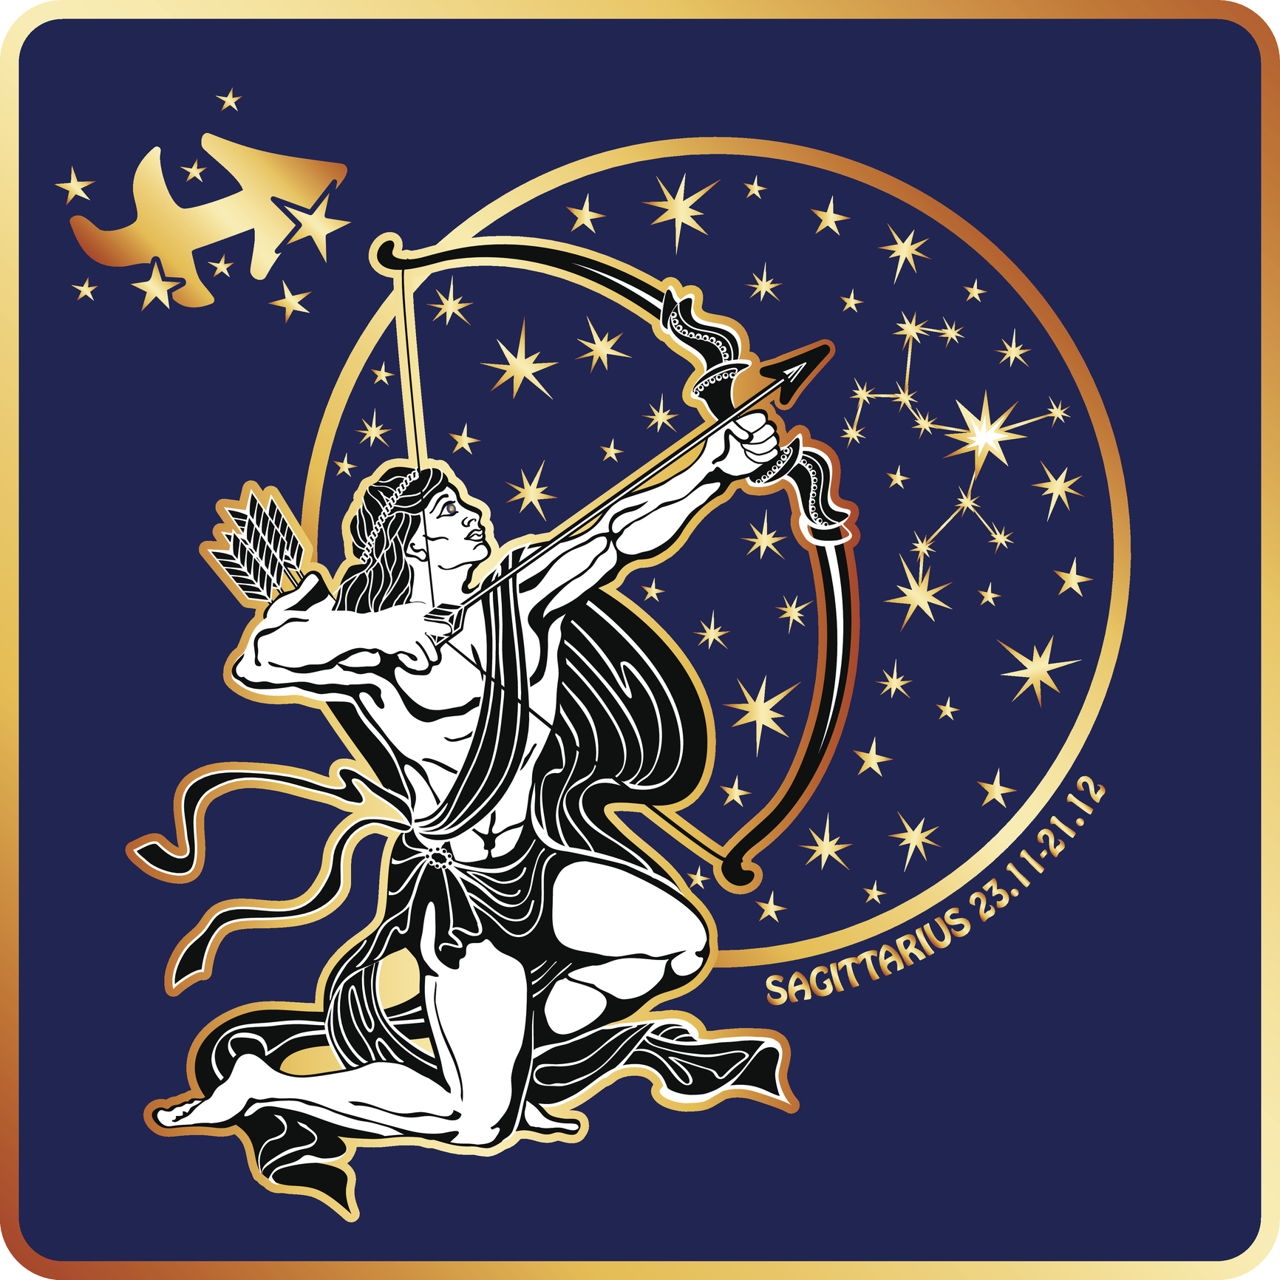 Зодиаки рисунки. Стрелец Sagittarius. Сагитариус знак зодиака. Стрелец знак зодиака символ. Стилизованные знаки зодиака.